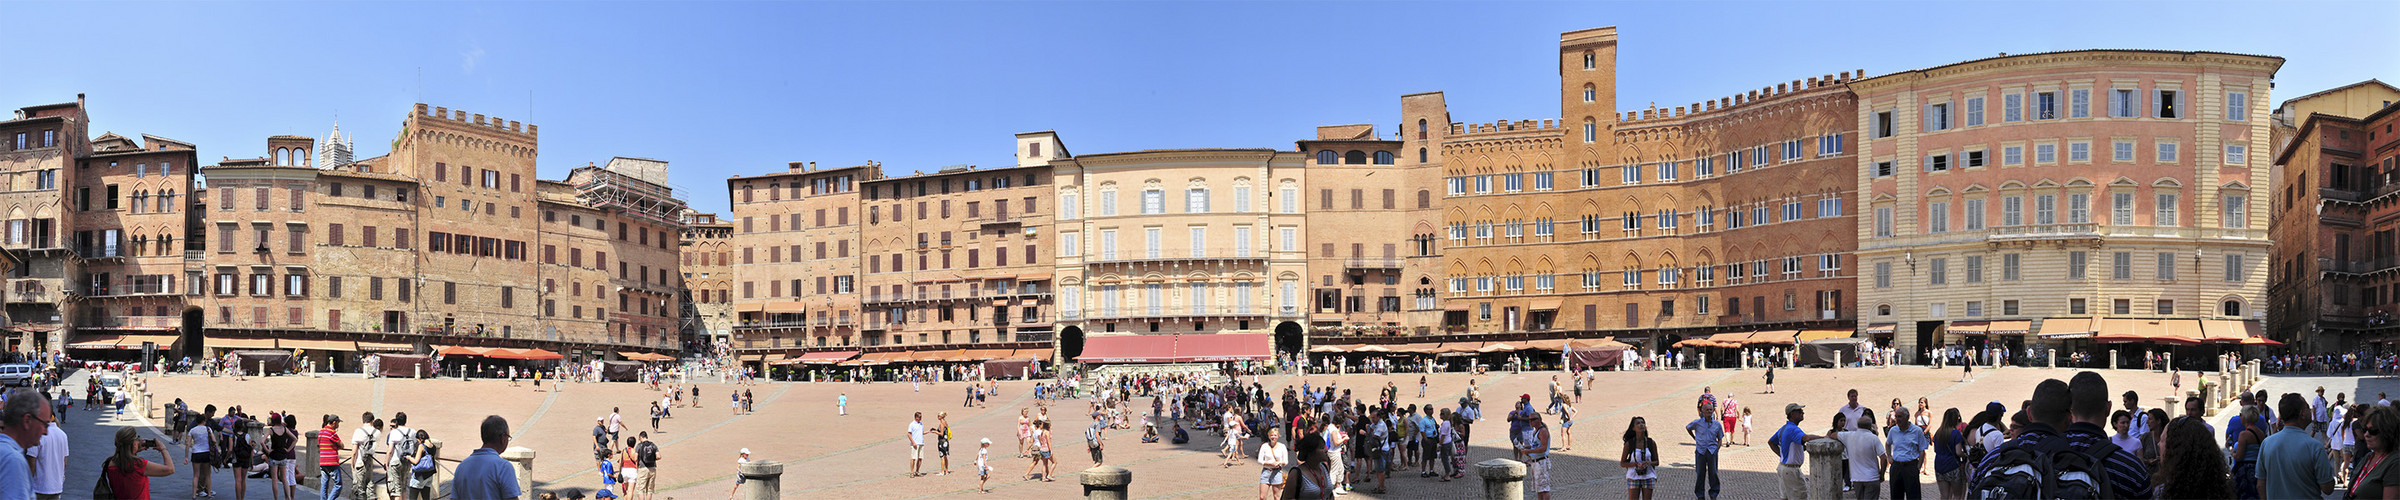 Panorama Piazza del Campo